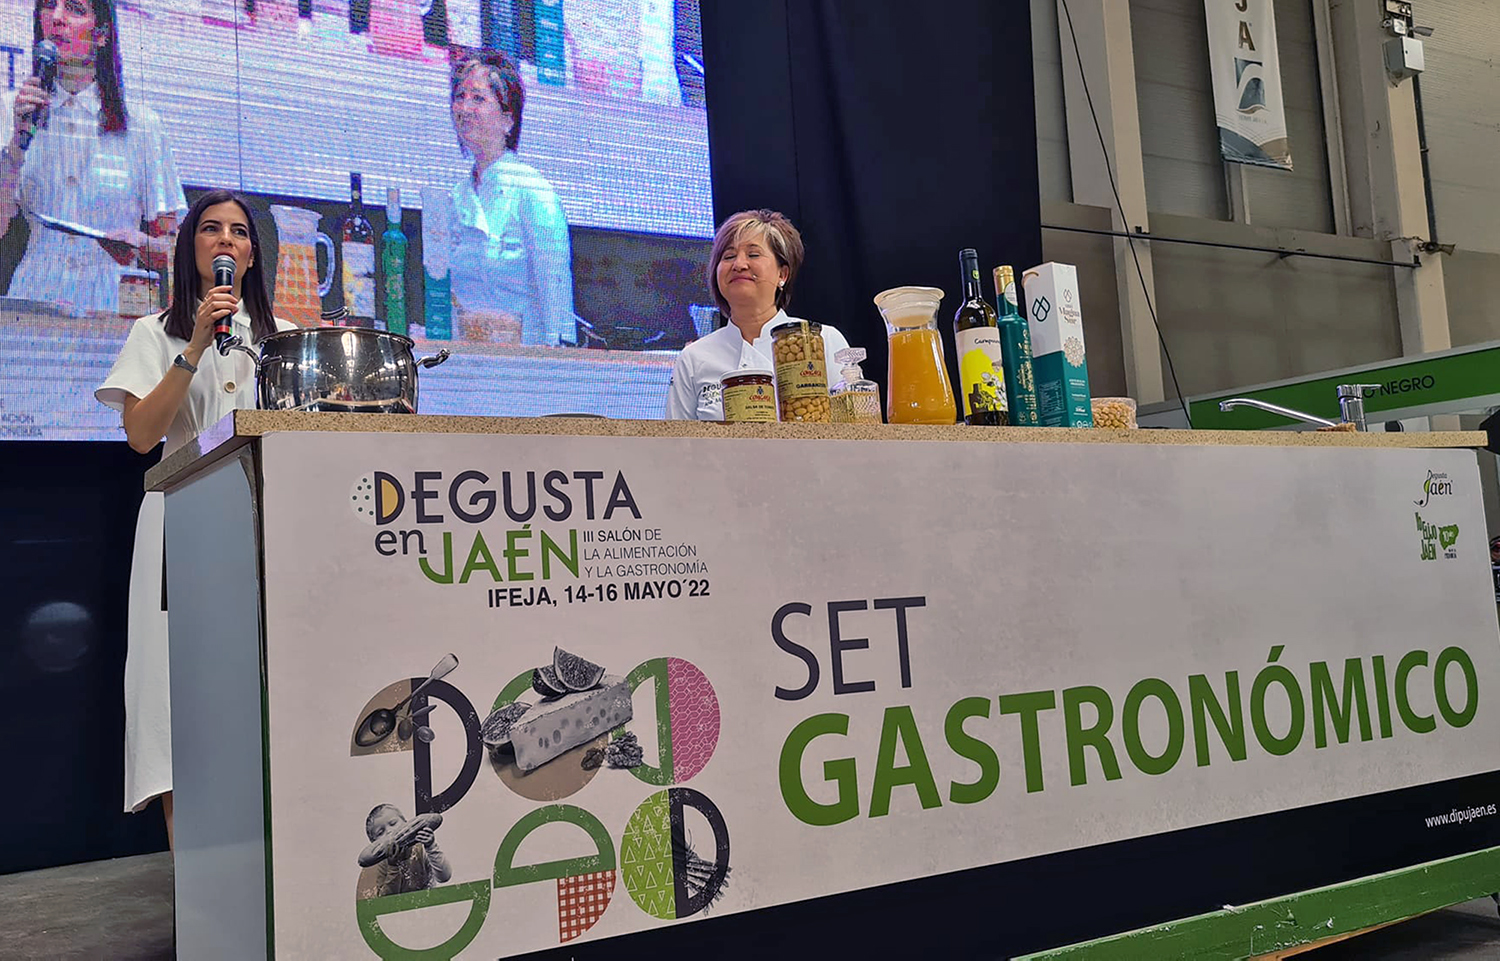 La excelencia de los productos agroalimentarios jienenses se exhibe hasta mañana lunes en el III Salón Degusta en Jaén en IFEJA